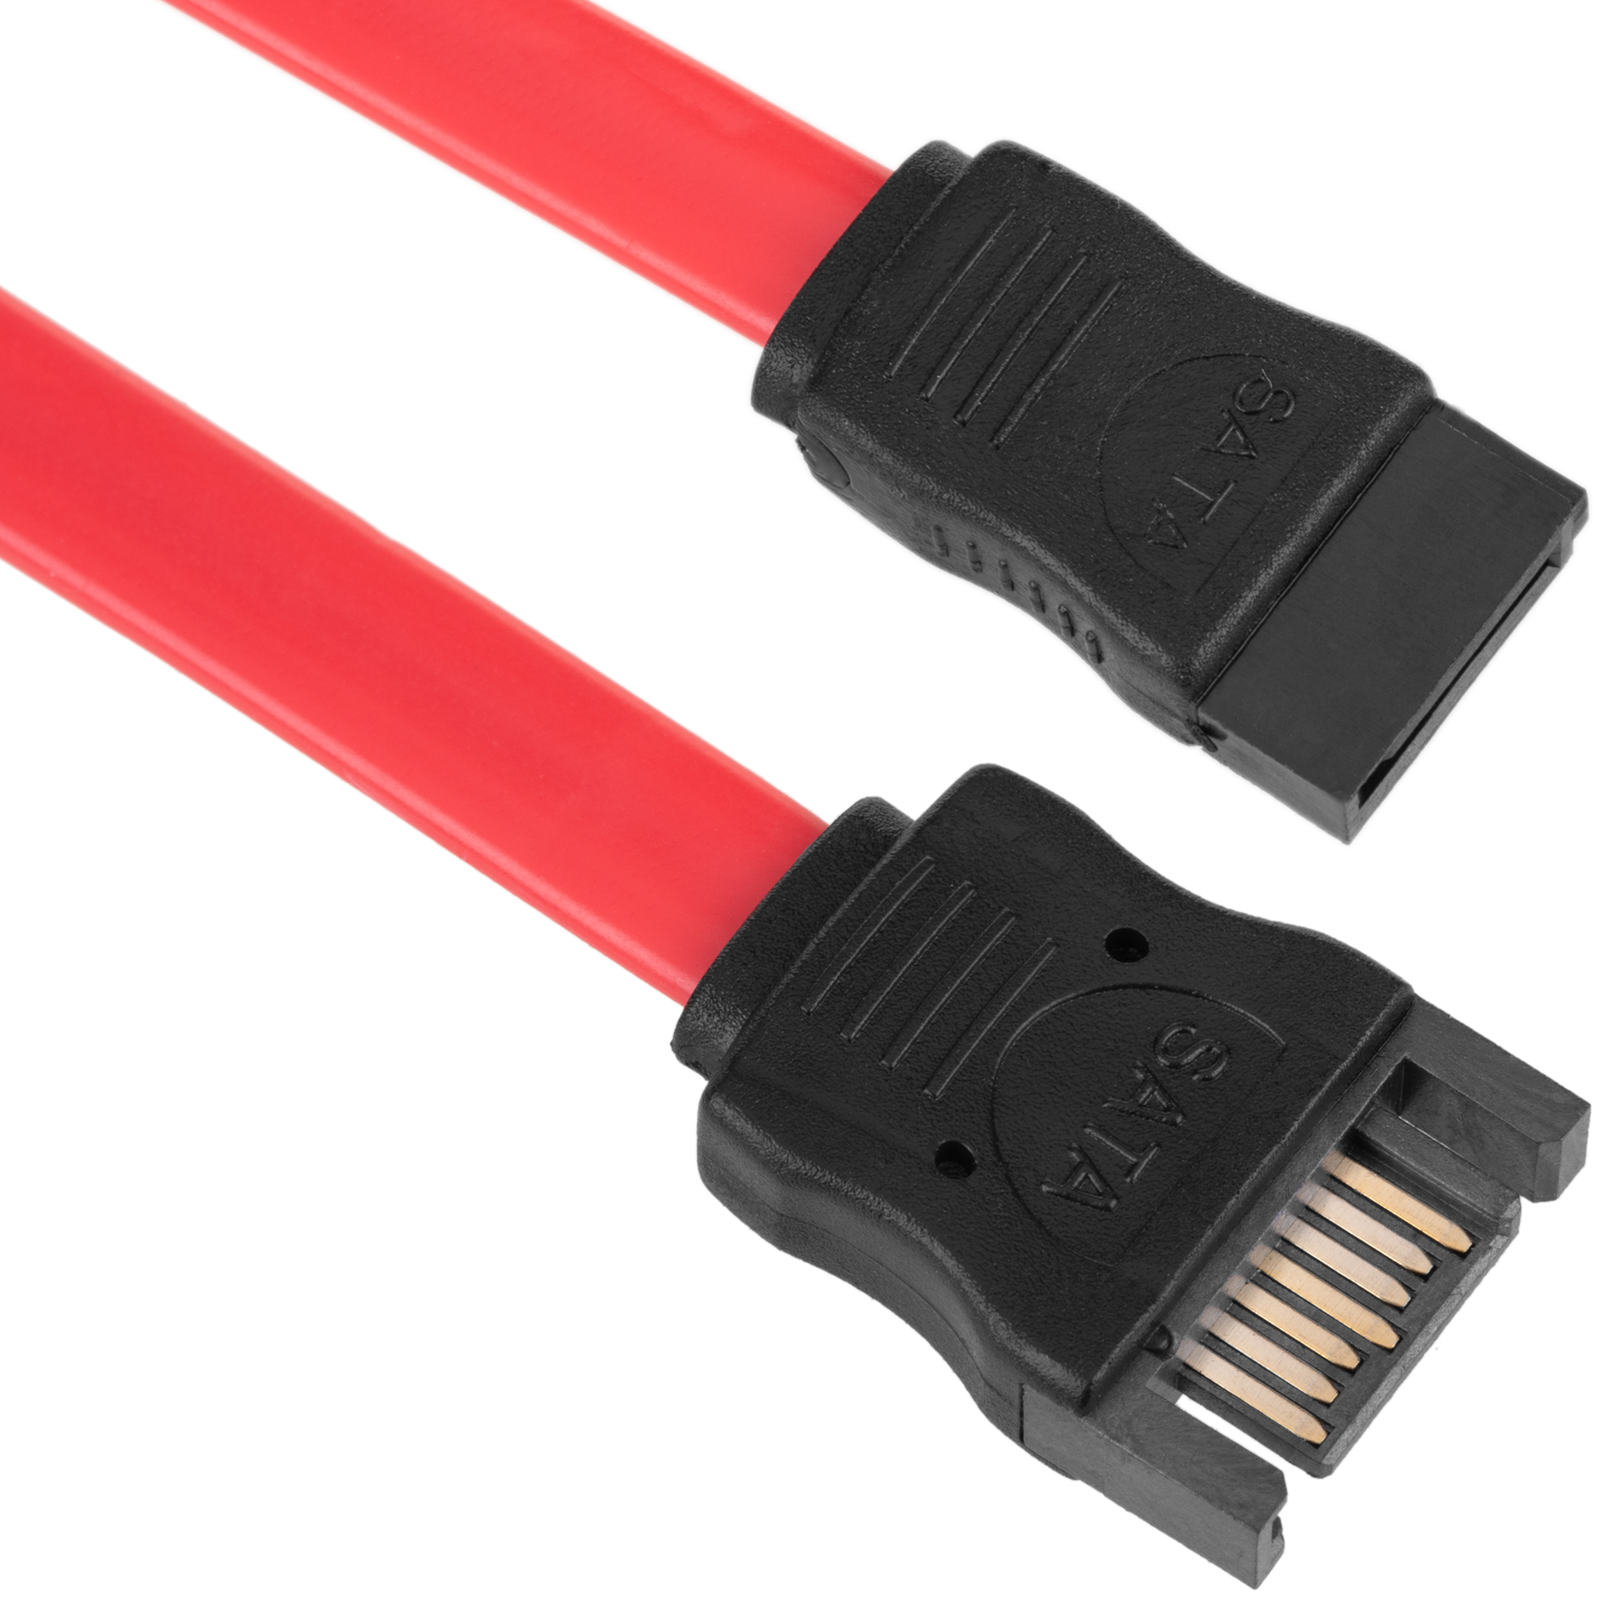 Cable Sata Datos Generico 25cm Rojo S/trabas